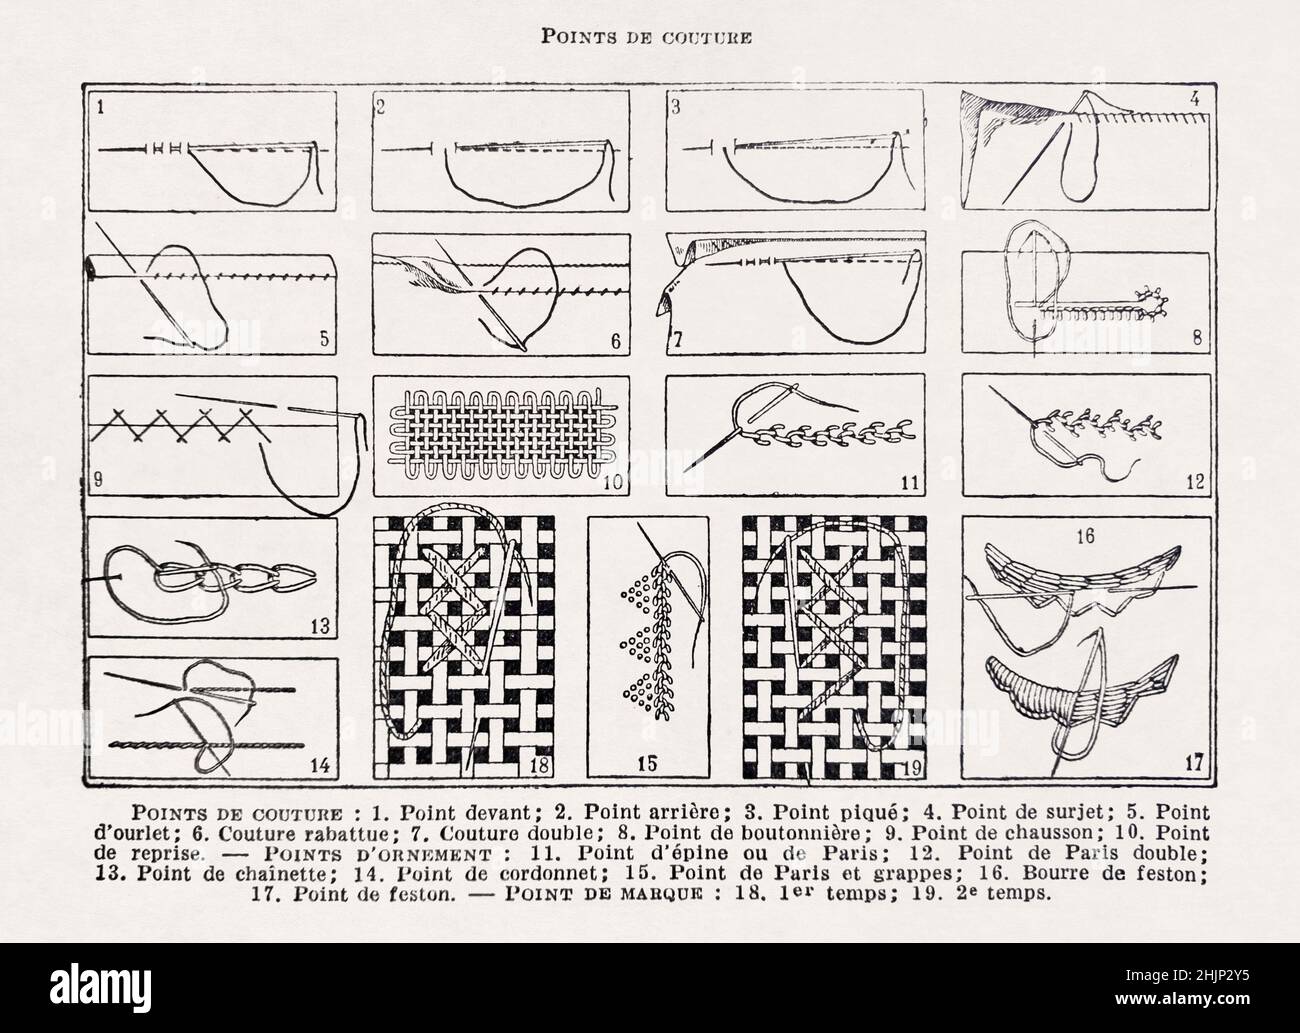 Ilustración antigua sobre puntos de costura impresa en 1899 en un diccionario francés. Foto de stock